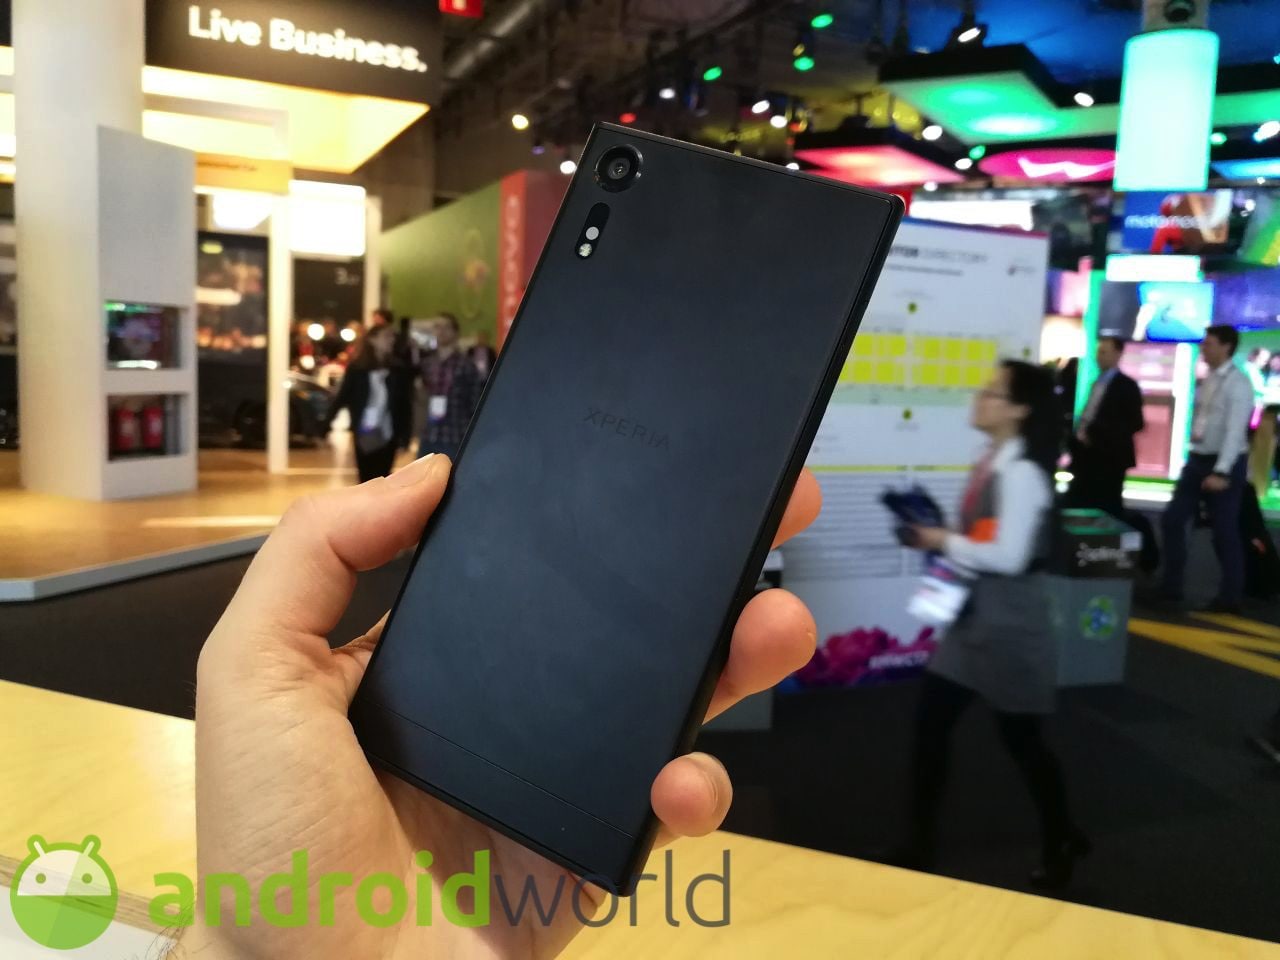 Sony Xperia XZs sfida Samsung Galaxy S8+ in condizioni di luce scarsa, e non sfigura affatto (video)